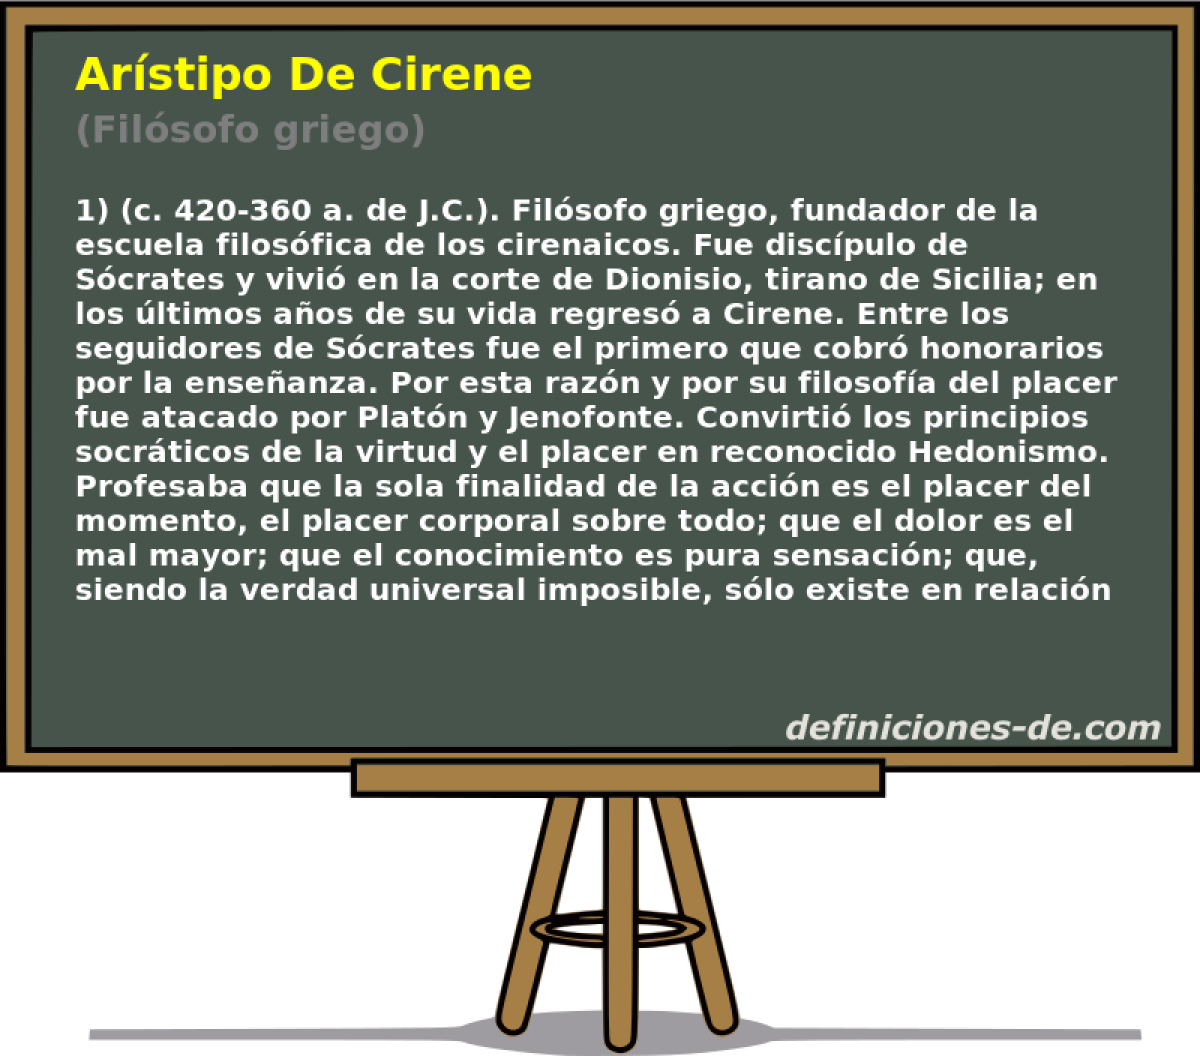 Arstipo De Cirene (Filsofo griego)